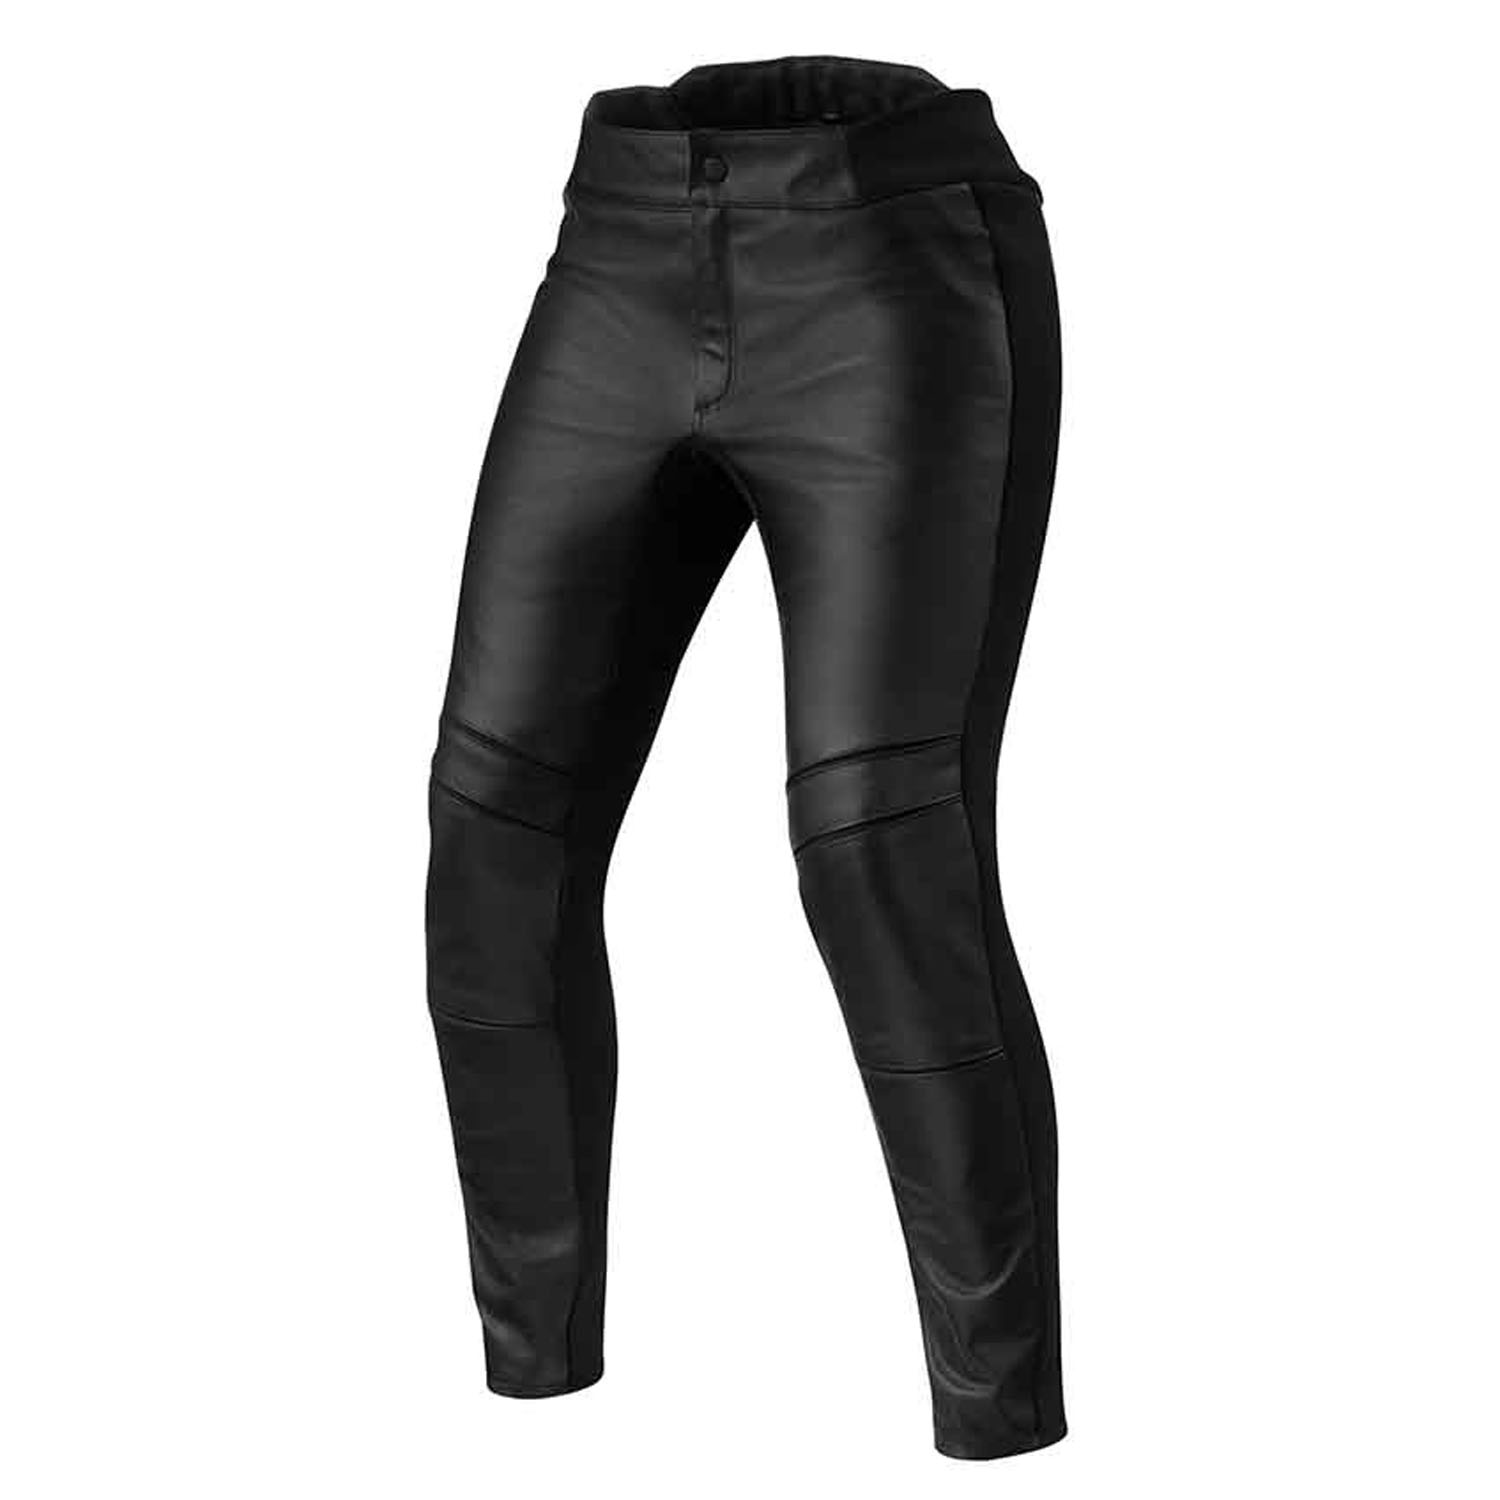 Image of EU REV'IT! Maci Ladies Black Short Motorcycle Pants Taille 40